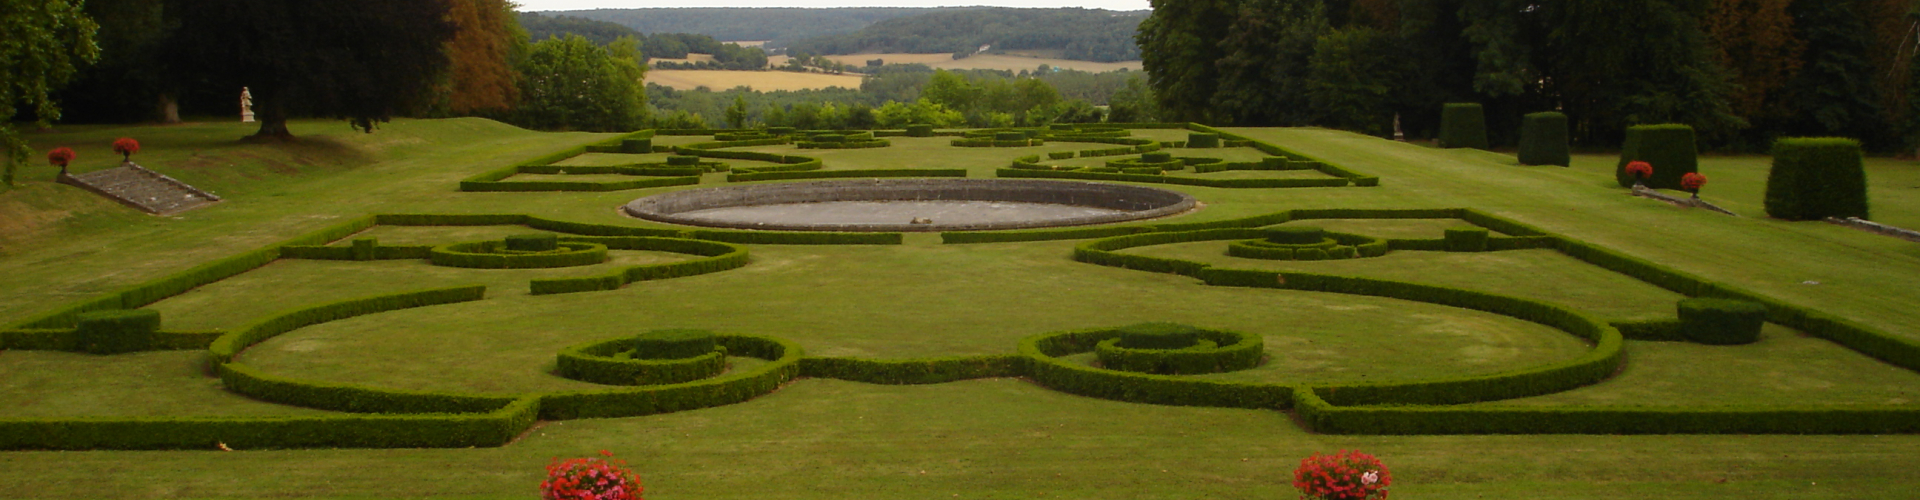 Le jardin du chateau de Montmirail